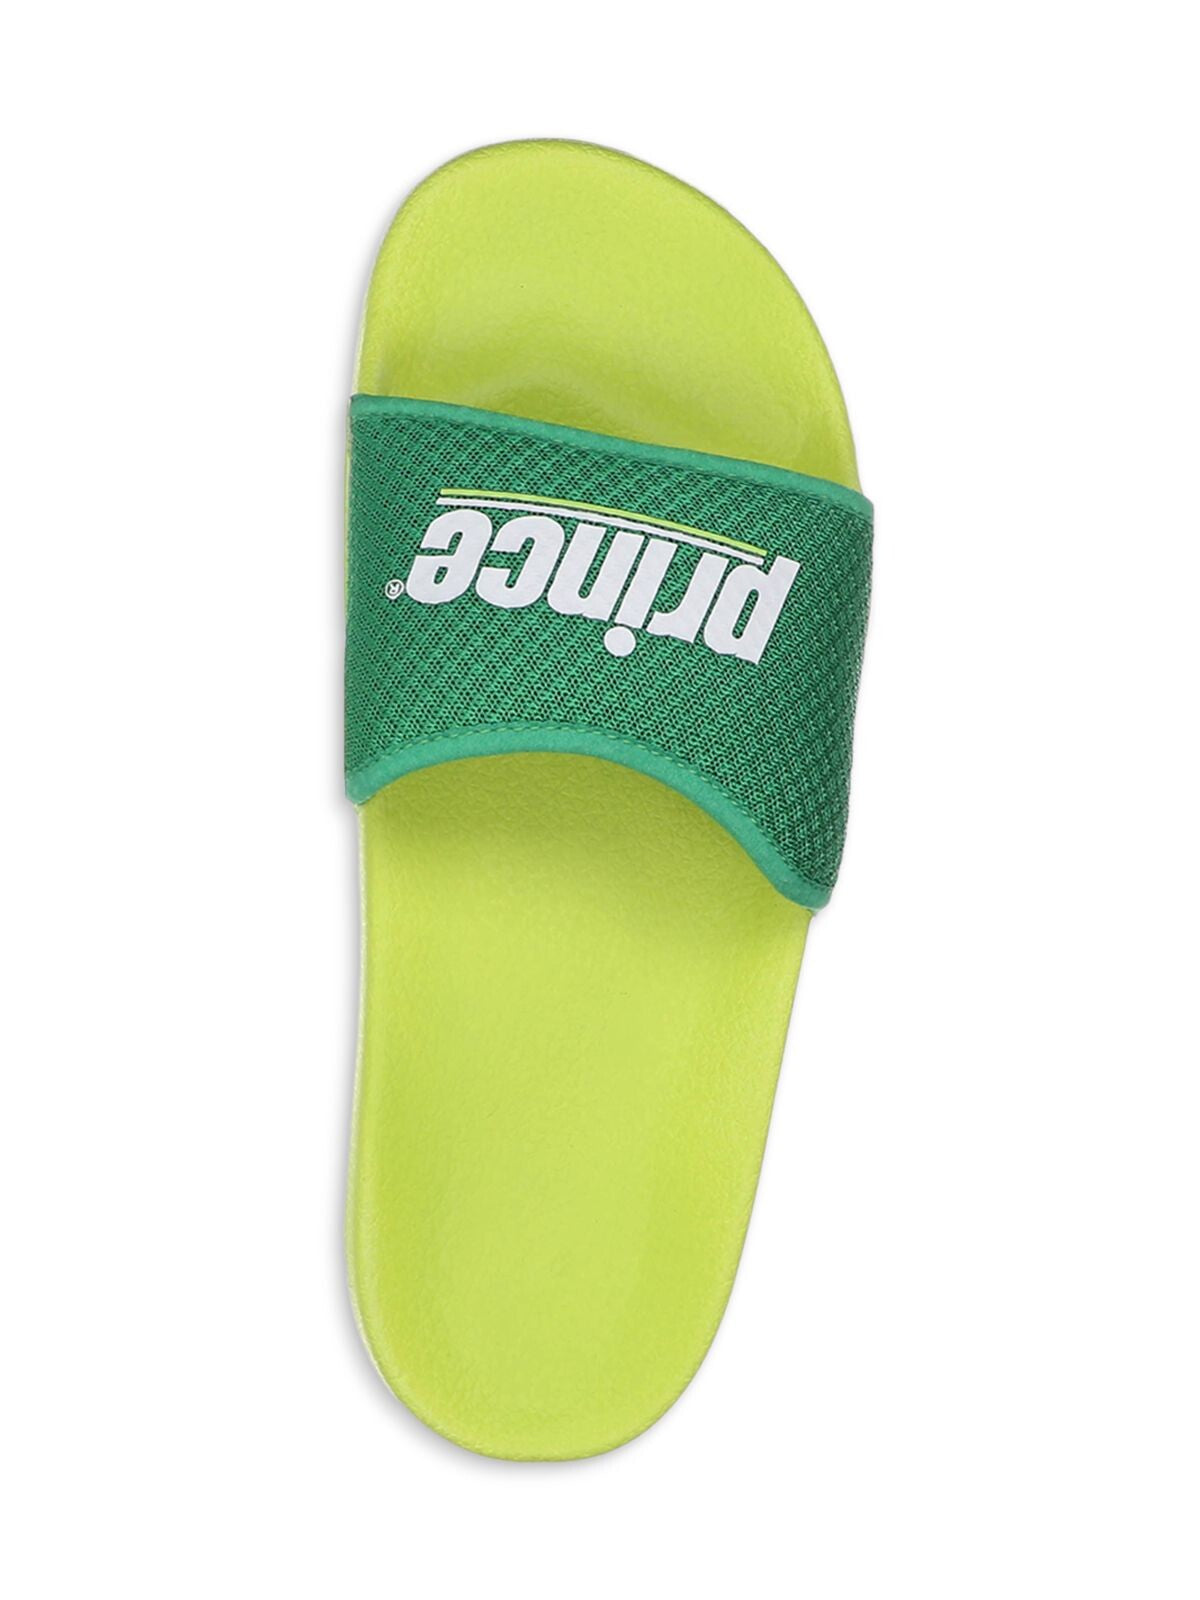 PRINCE Womens Green Logo Comfort Prism Round Toe Platform Slip On Slide Sandals Shoes 37